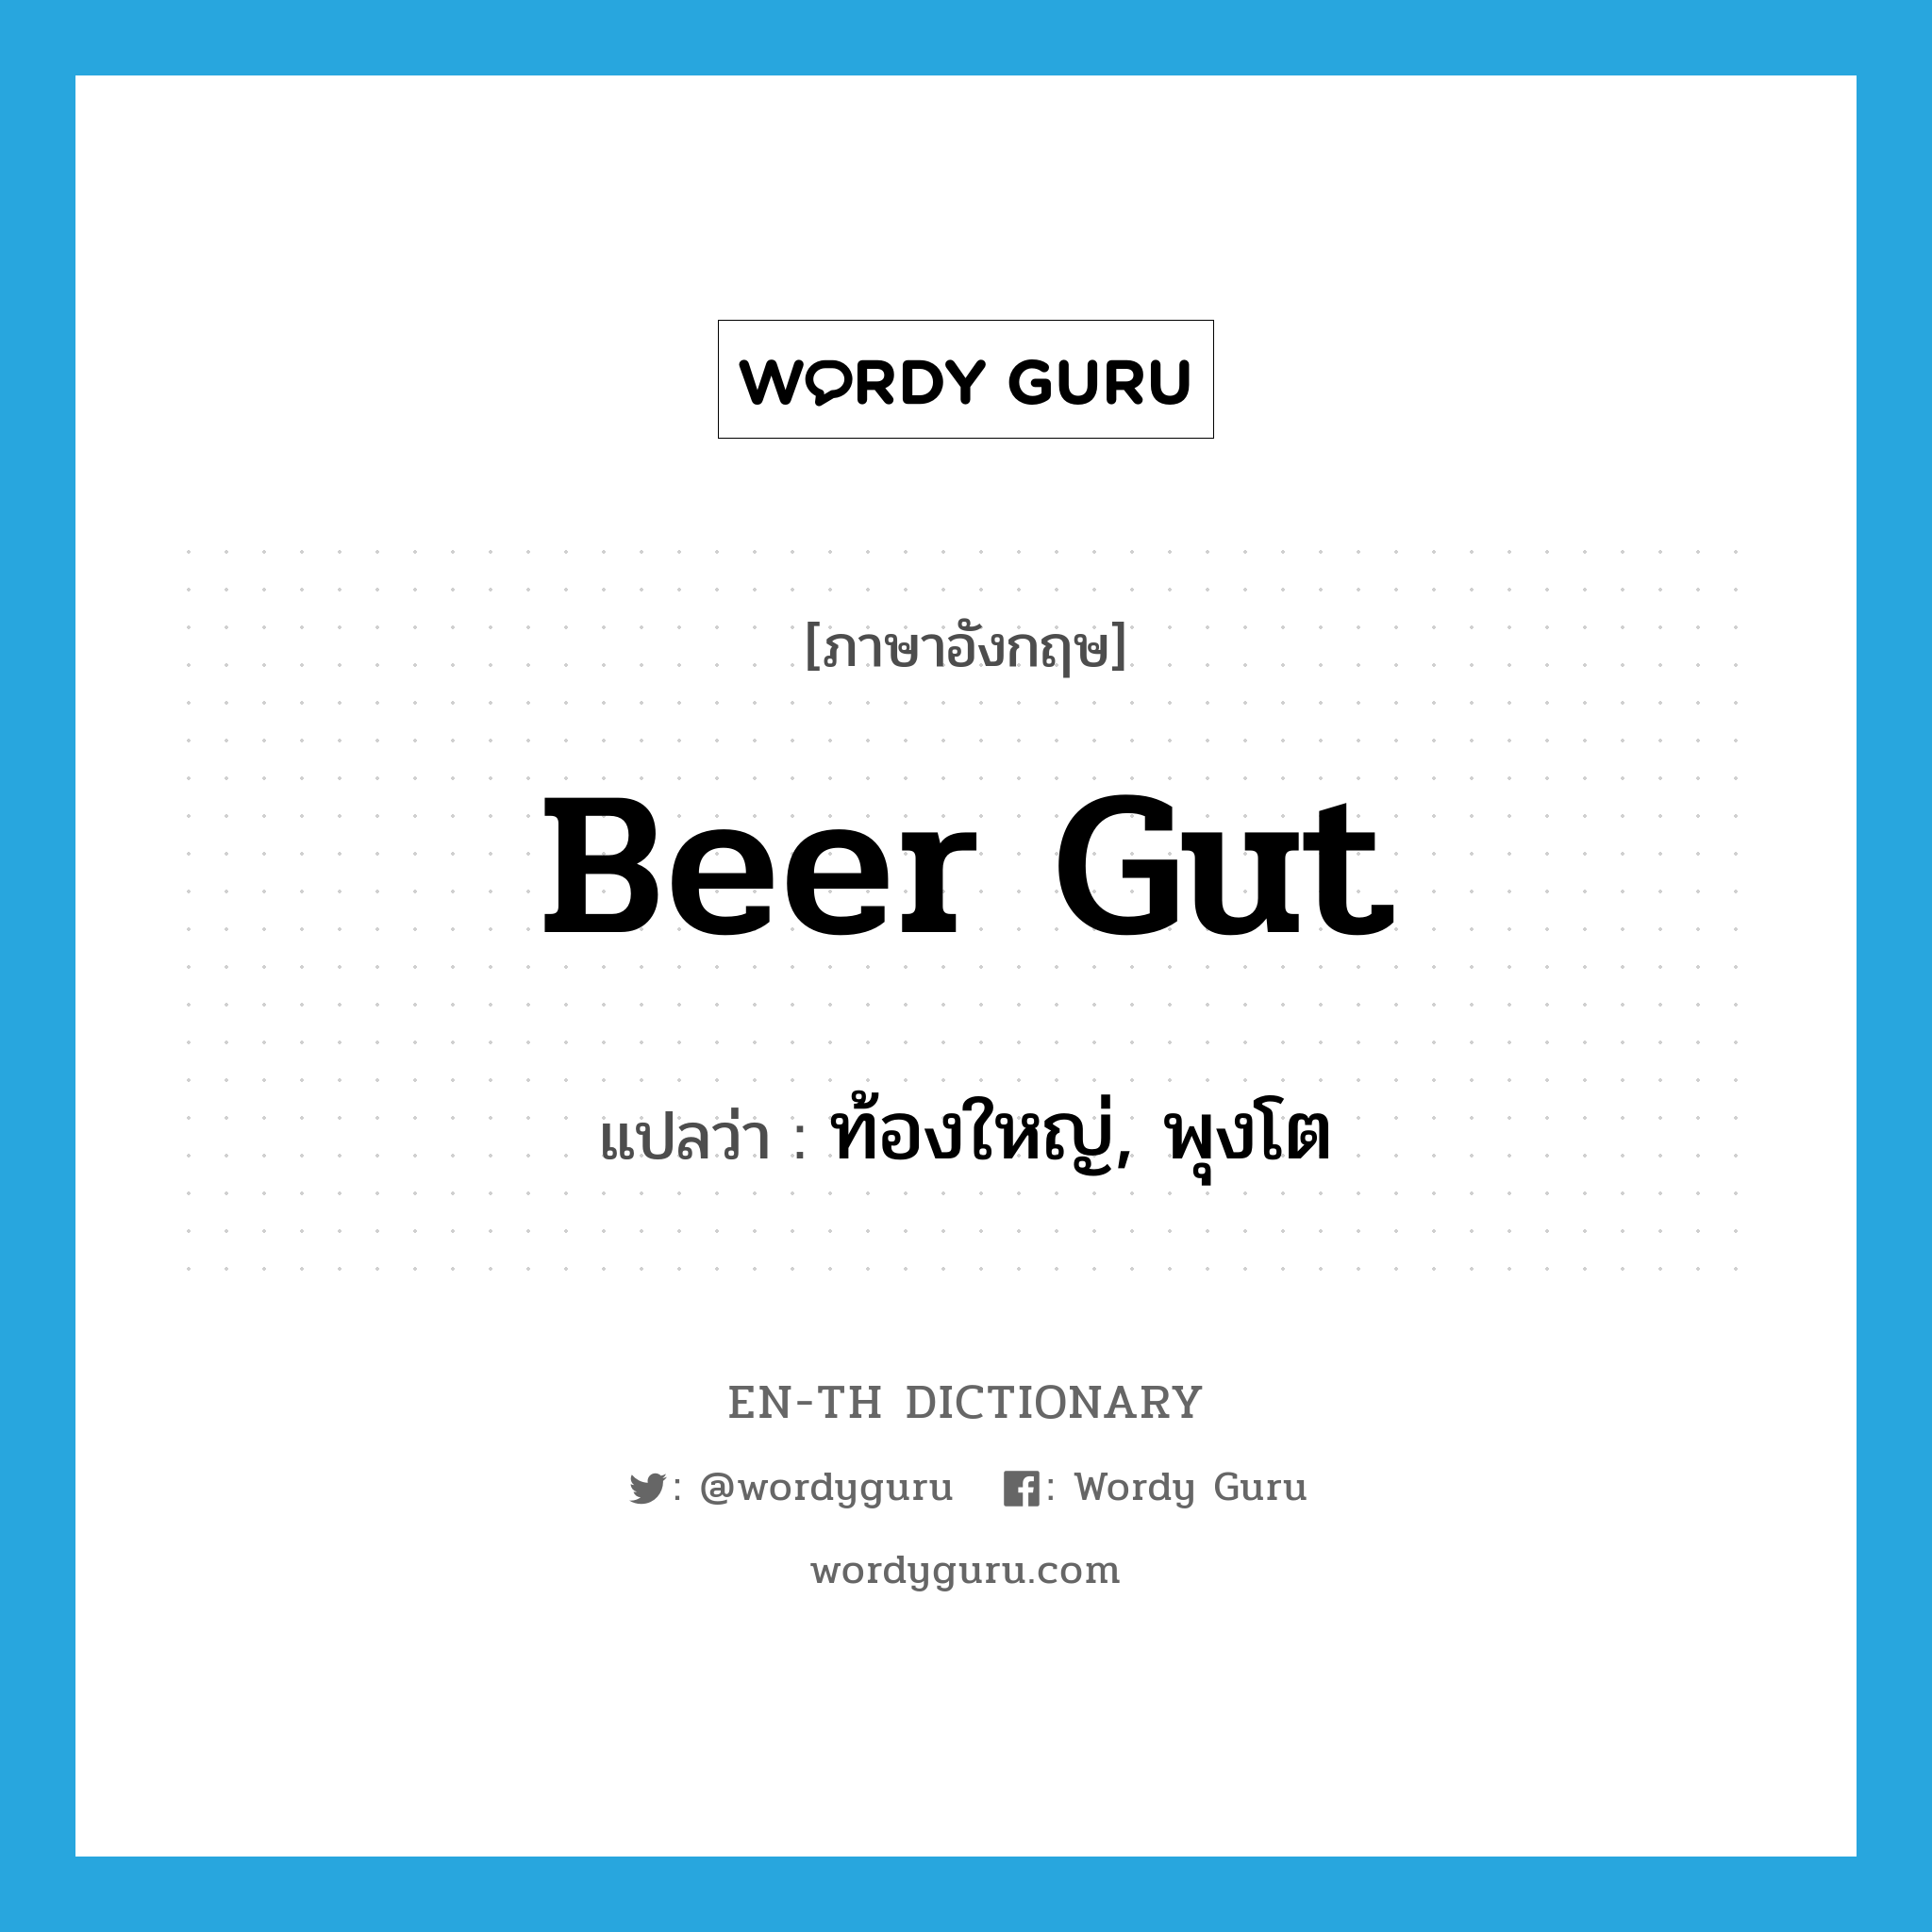 beer gut แปลว่า?, คำศัพท์ภาษาอังกฤษ beer gut แปลว่า ท้องใหญ่, พุงโต ประเภท SL หมวด SL